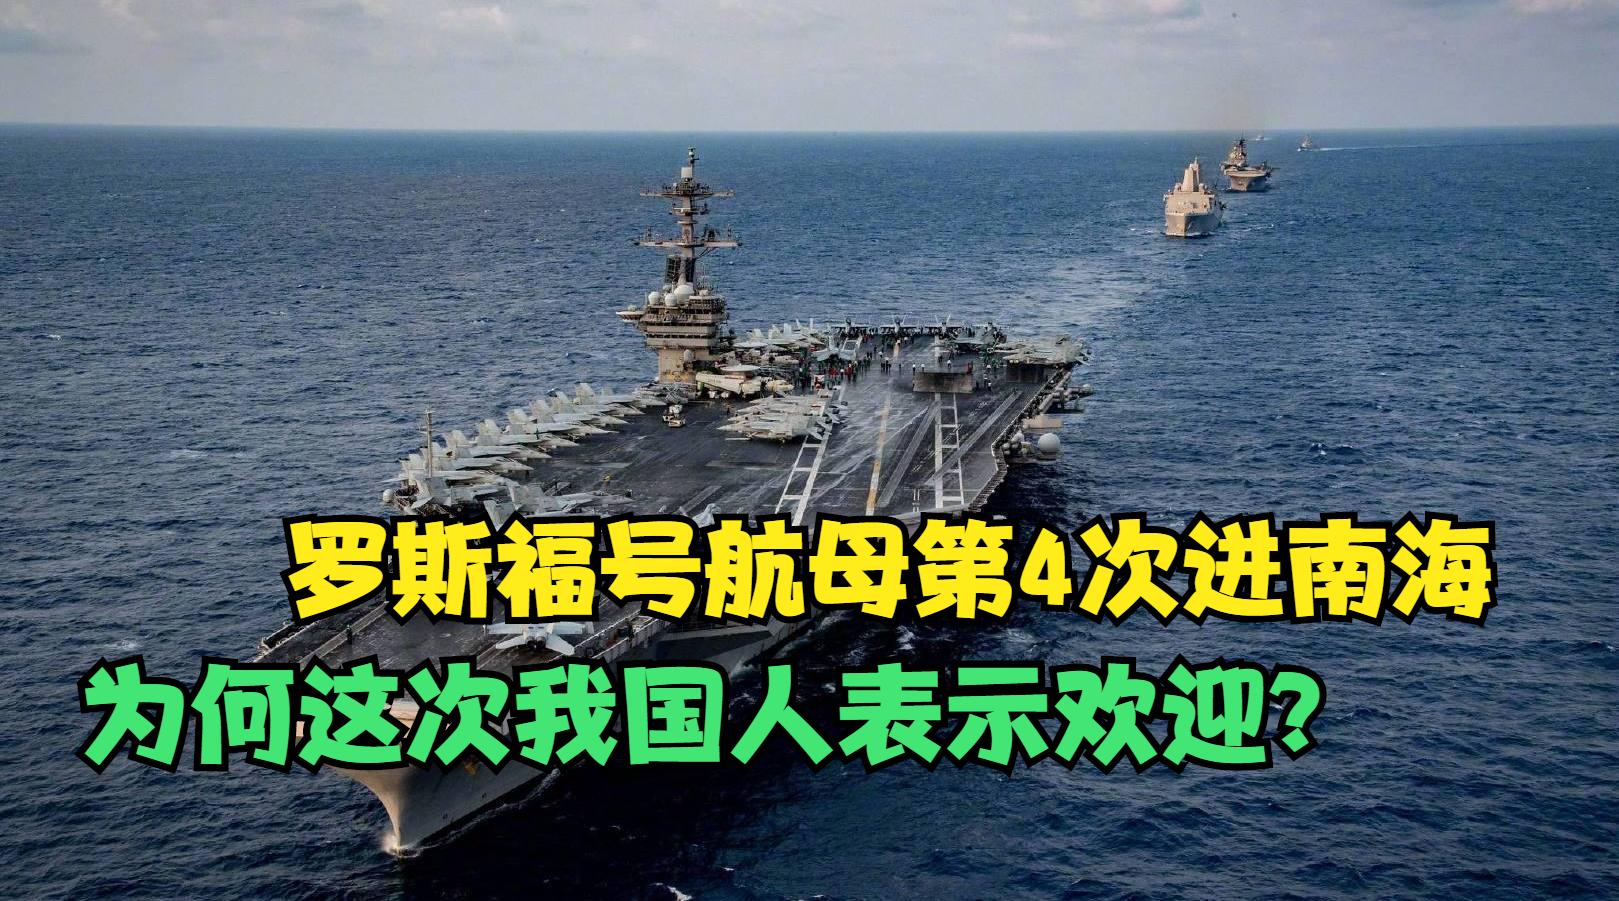 美日航母在南海演习 向中国展示实力